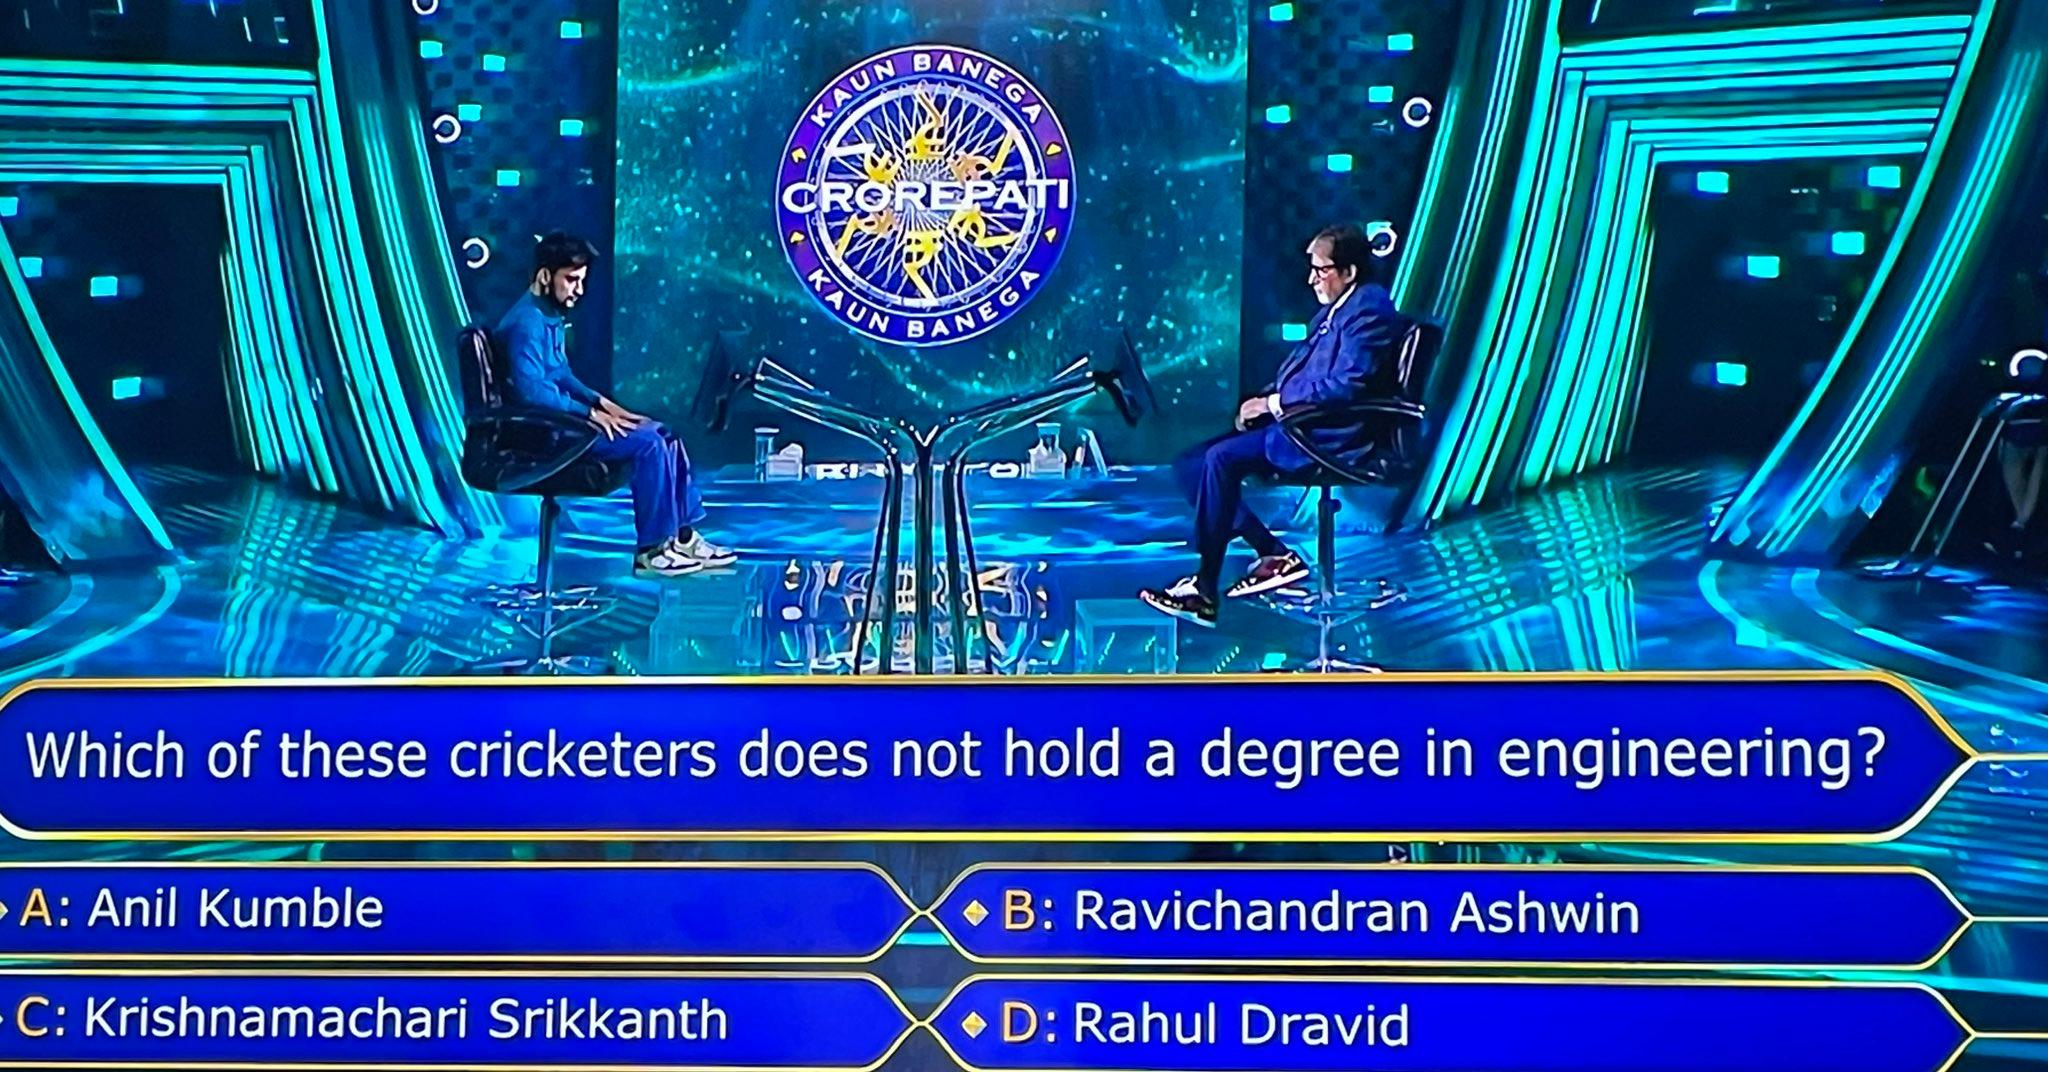 KBC: क्रिकेट से जुड़े ₹12.50 लाख के सवाल का जवाब नहीं दे पाया कंटेस्टेंट, सही जवाब जानते हैं तो बताएं